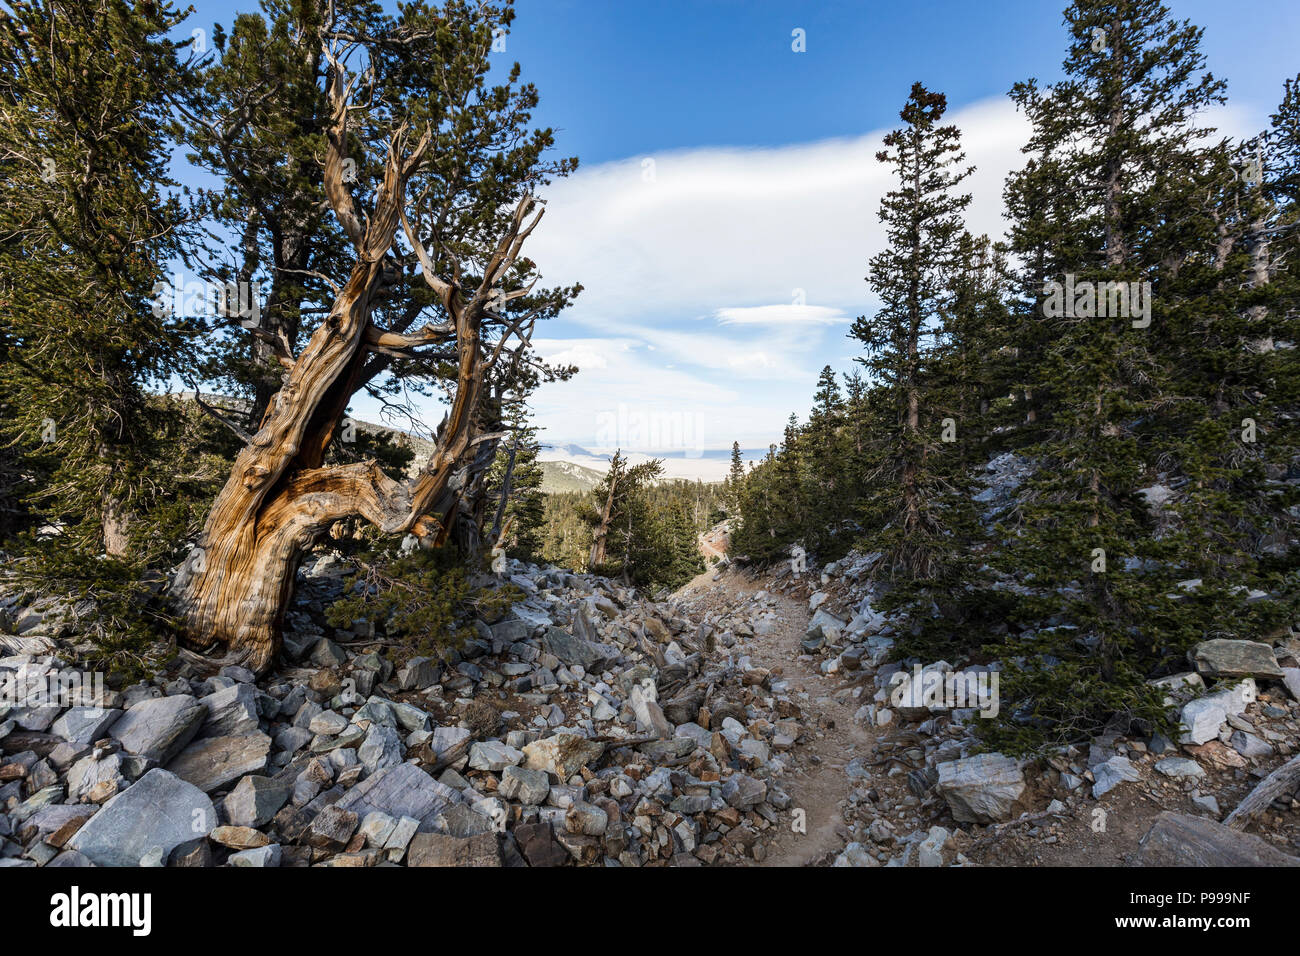 Bristlecone Pines trail nel Parco nazionale Great Basin nel Nevada settentrionale. Bristlecone Pines sono gli alberi più vecchi del mondo. Foto Stock